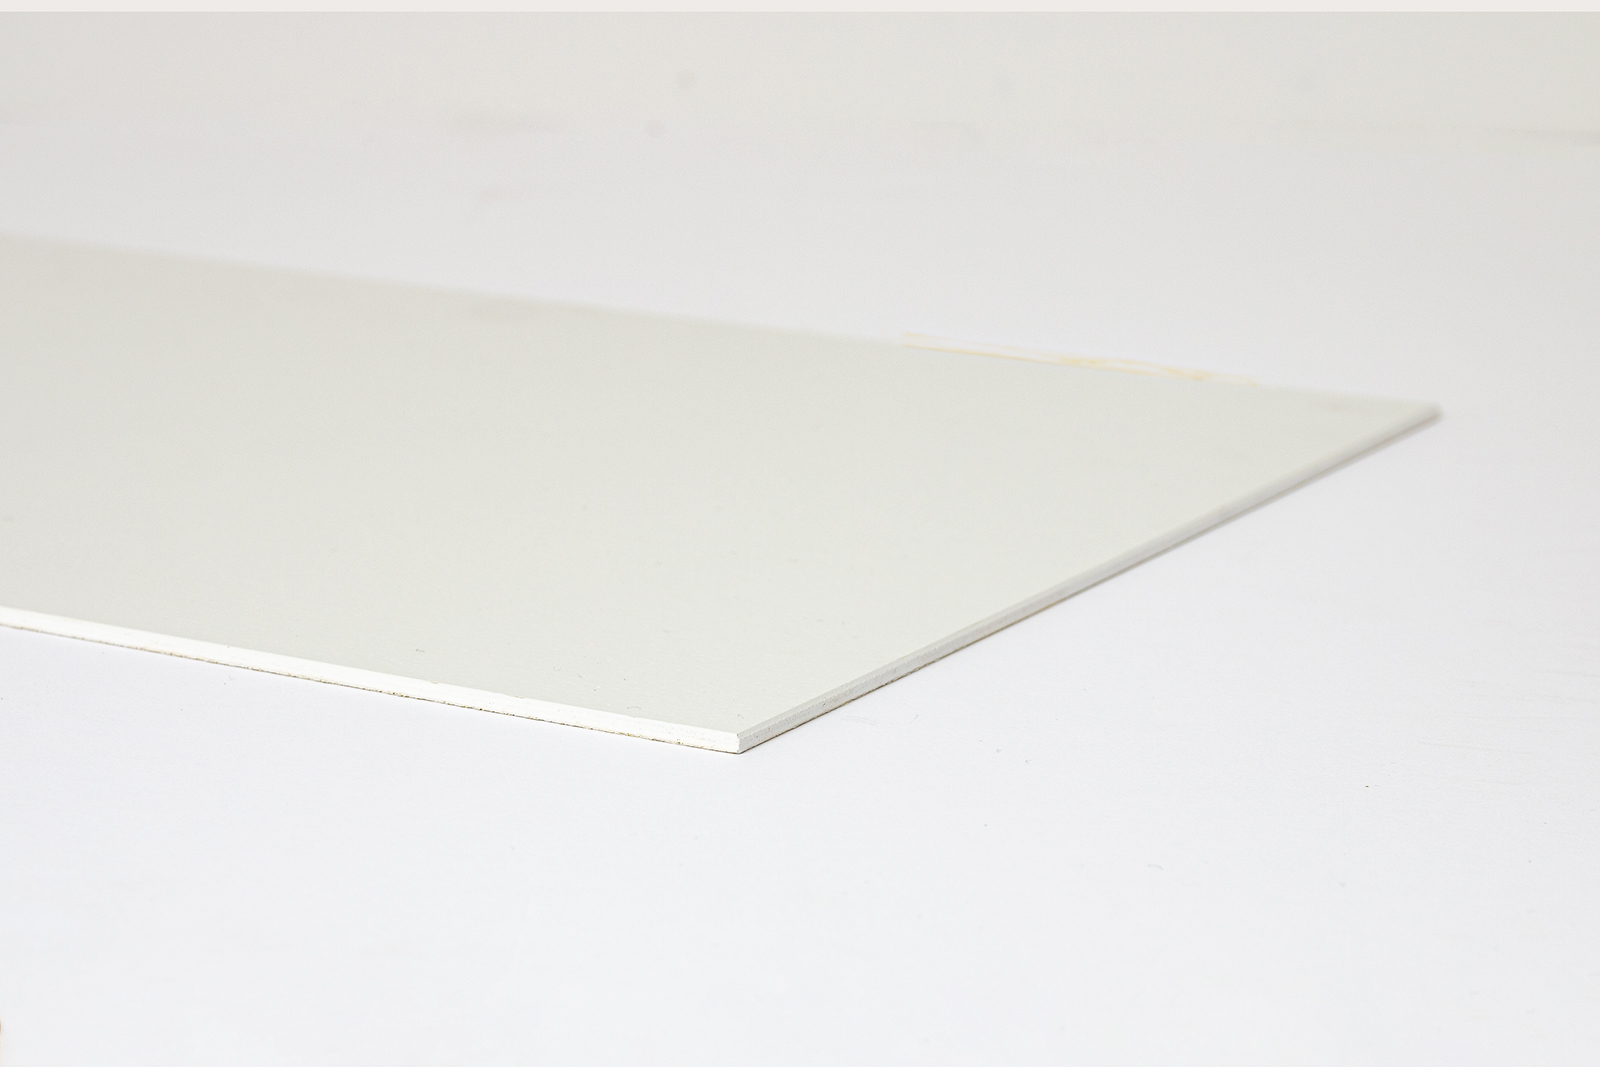 塗装のキッチンパネル マットホワイト KB-OT001-01-G248 小口にホワイトのタッチアップ材を塗装した仕上がり。角はサンドペーパーで面取りしてあります